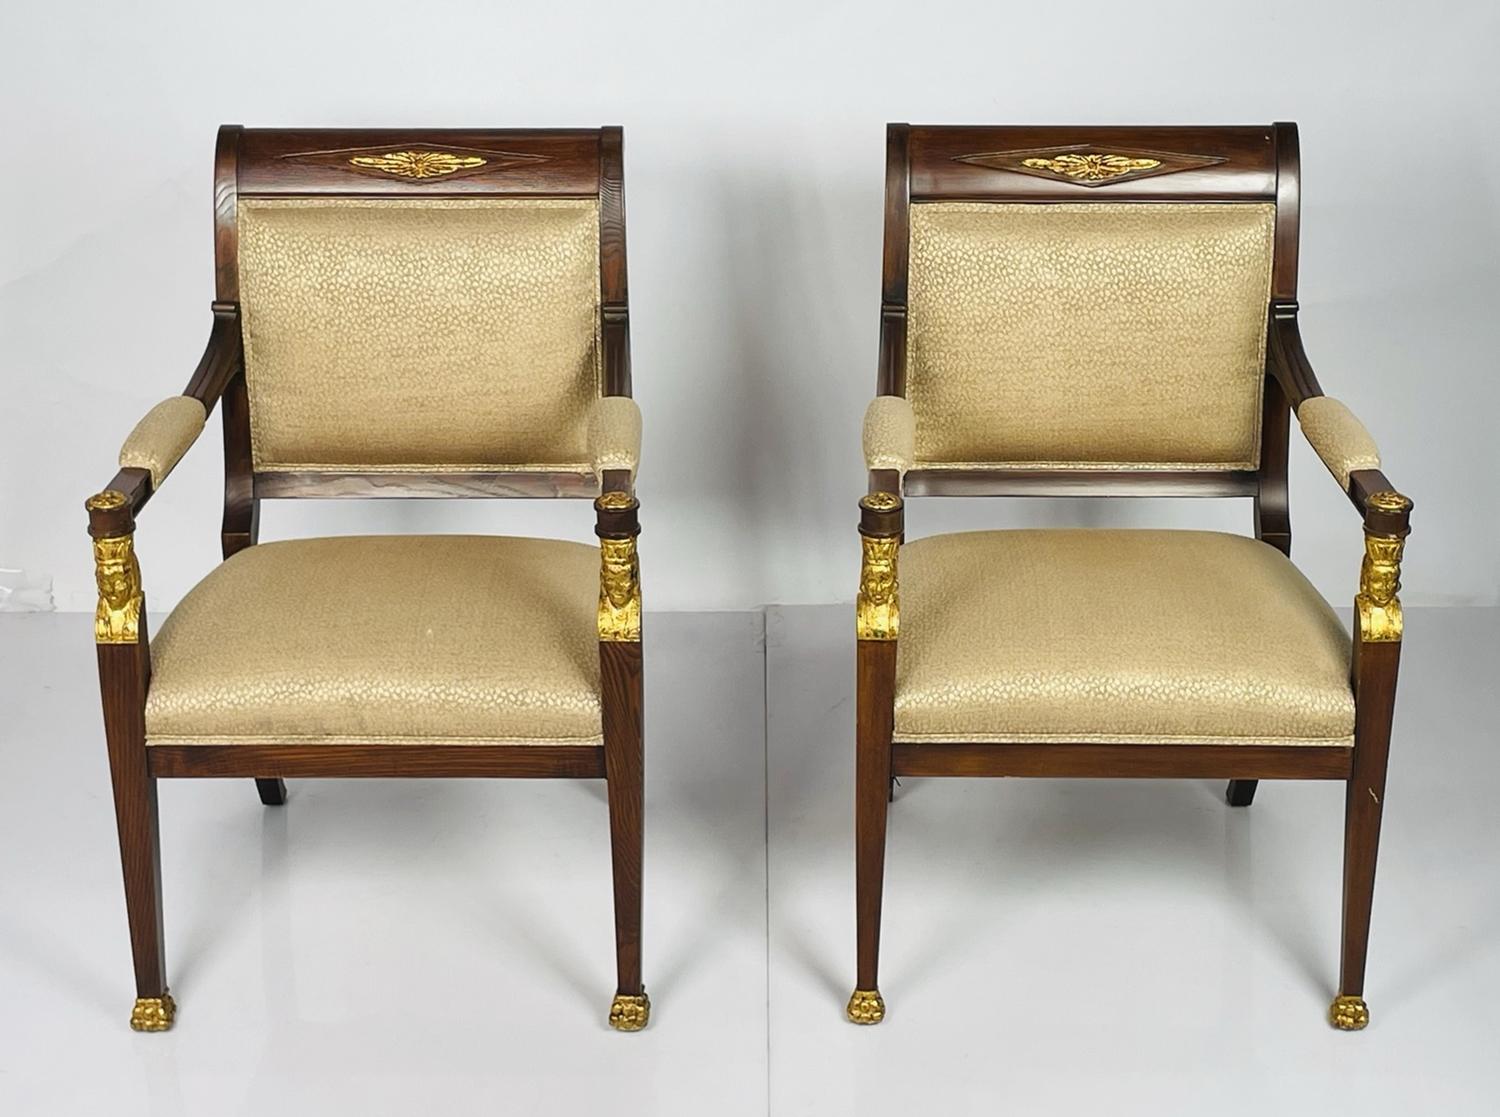 Unsere exquisiten Mahagoni-Sessel Giltwood im französischen Empire-Stil sind eine zeitlose Ergänzung für jeden luxuriösen Wohnbereich. Diese atemberaubenden Sessel verkörpern die Opulenz und Eleganz der französischen Empire-Ära. Sie sind aus